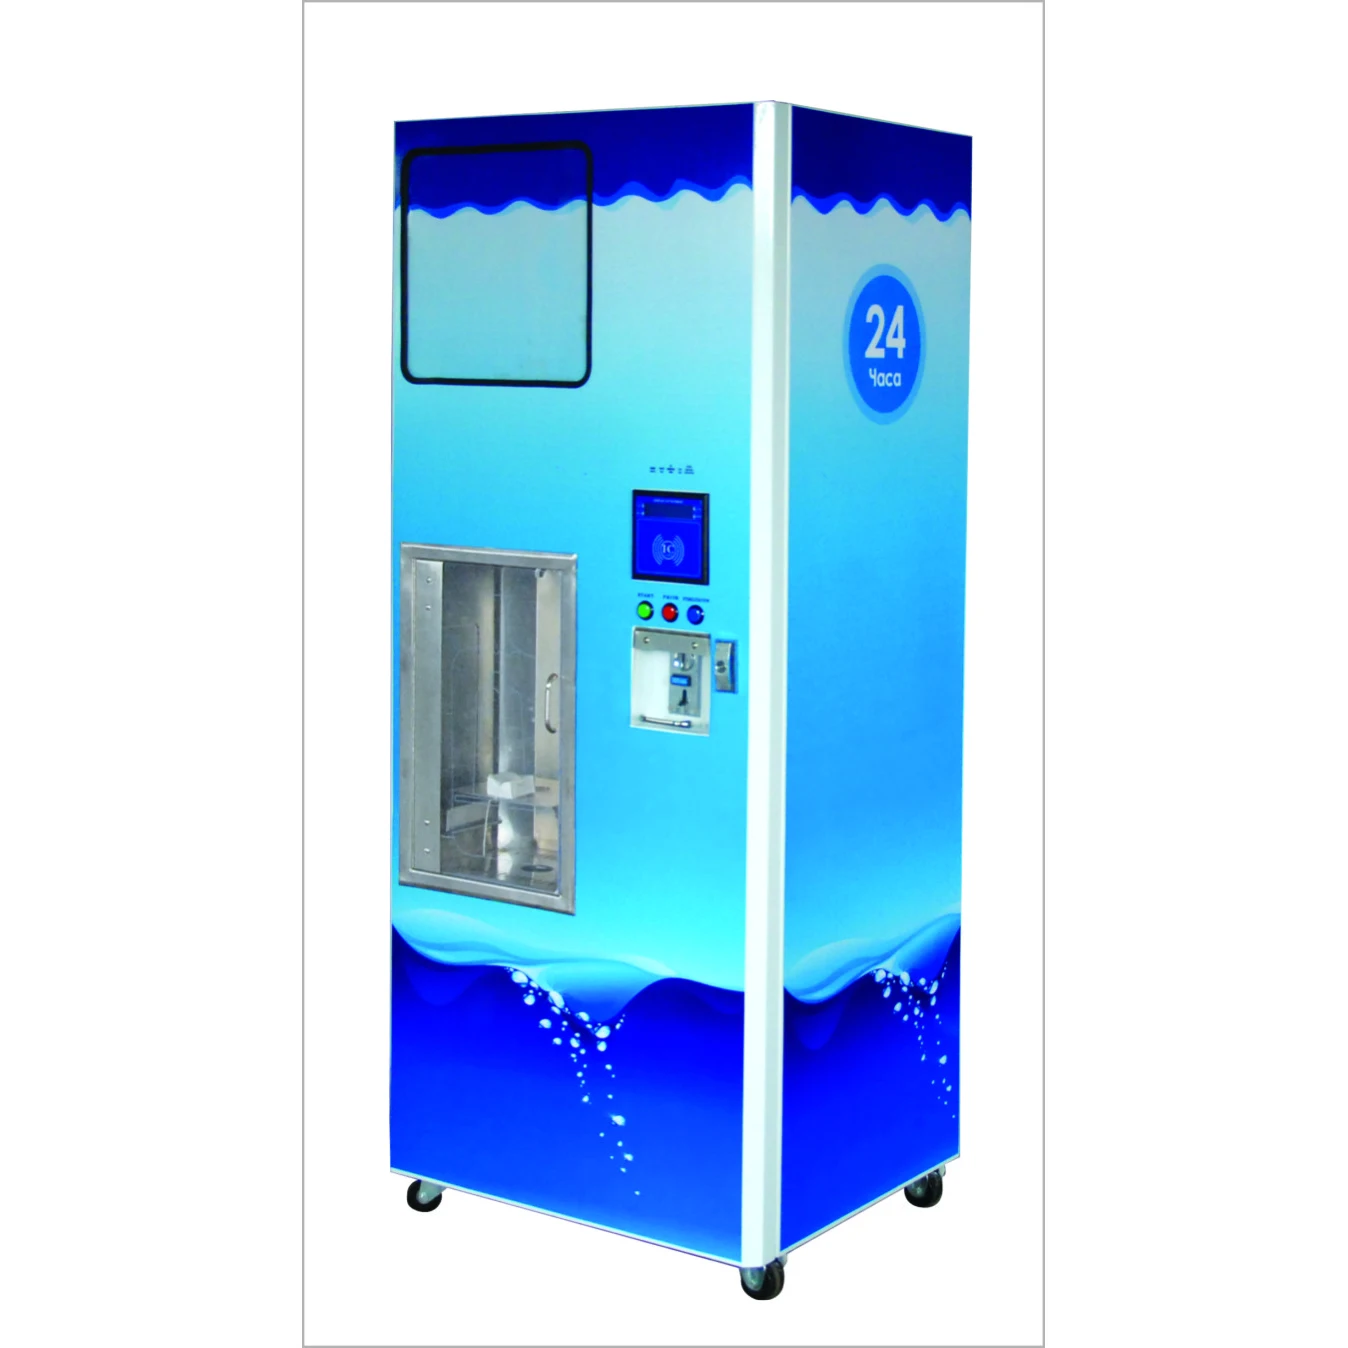 Очищенная вода автомат. Автомат с водой. Автомат по продаже воды в бутылках. Автомат с водой в школе. Автомат с водой 5р л.